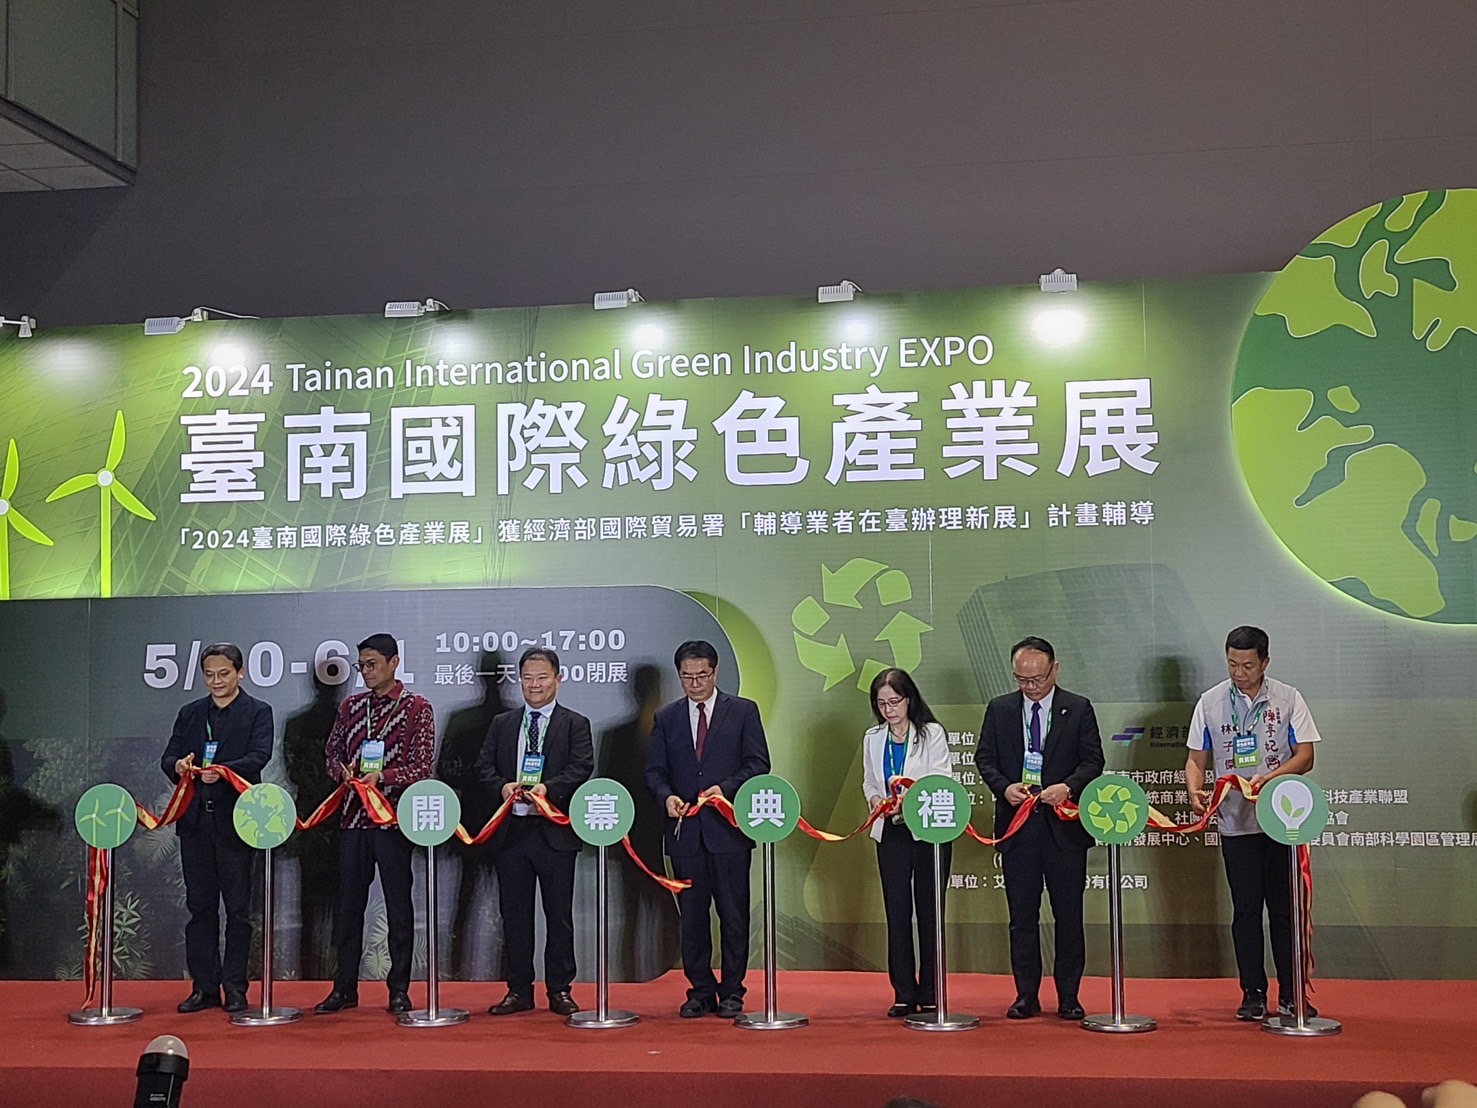 《2024台南國際綠色產業展》泰鋒染化公司舉辦「推動節能減碳排與資源循環技術創新」論壇協助企業邁向淨零碳排目標